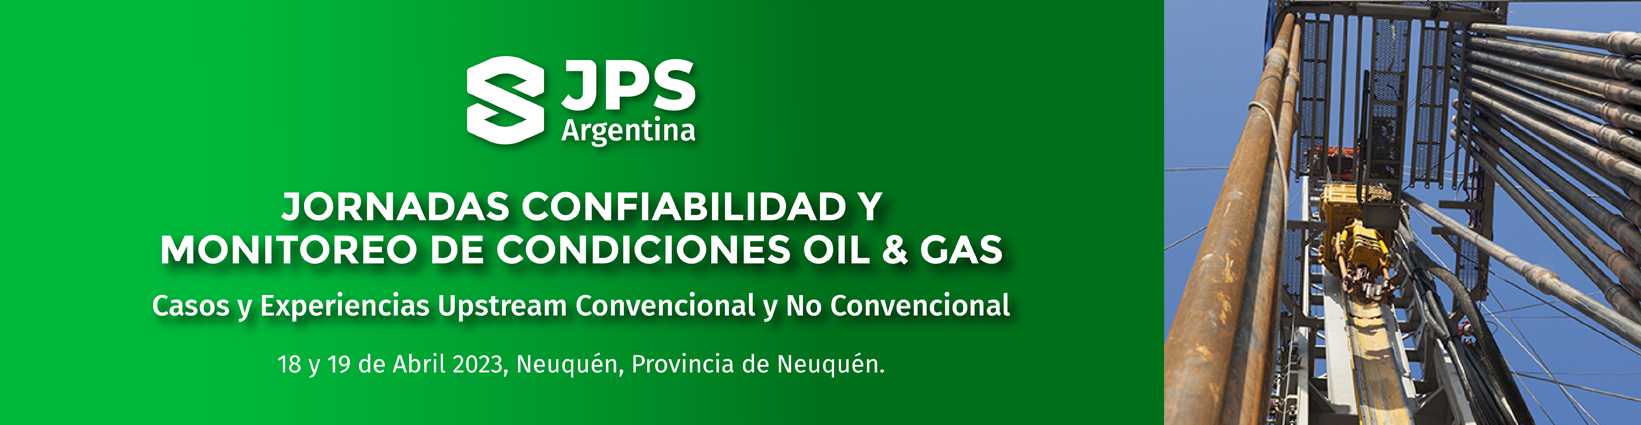 Jornadas de Confiabilidad y Monitoreo de Condición Oil & Gas